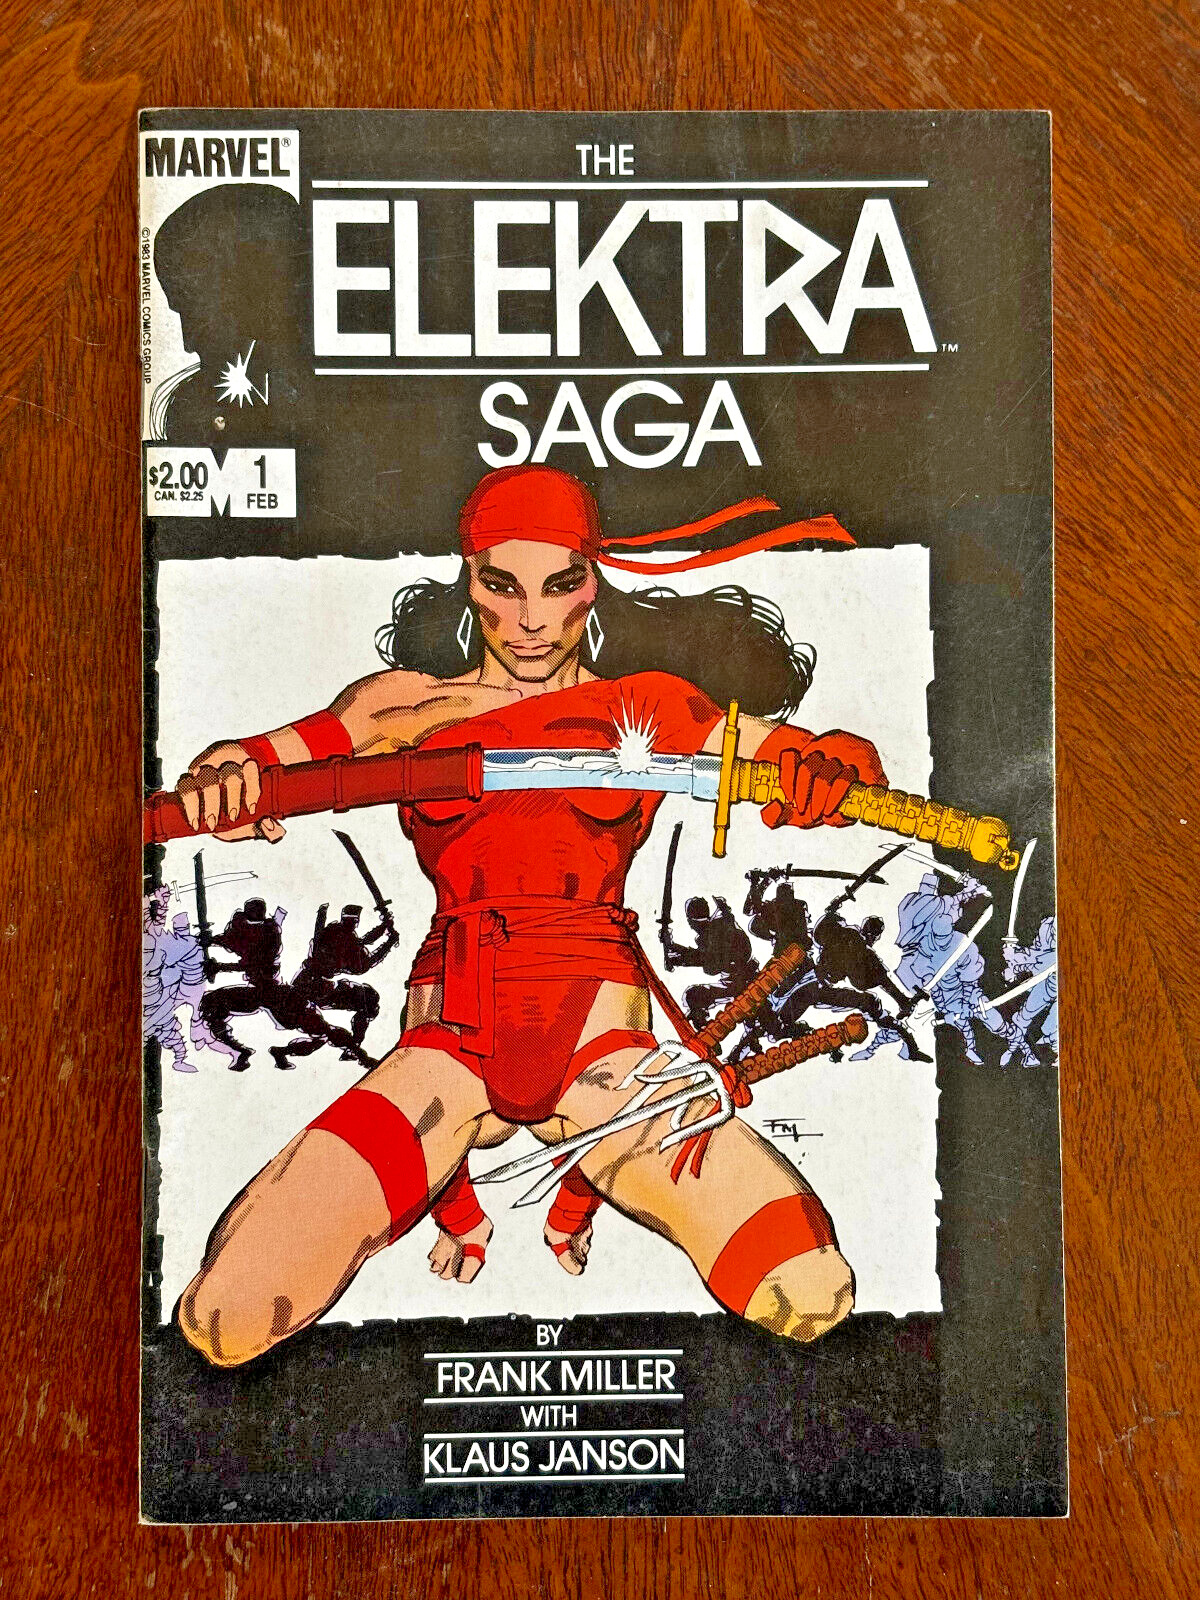 Elektra Saga #1 (1984) Frank Miller & Klaus Janson - High Grade- Marvel